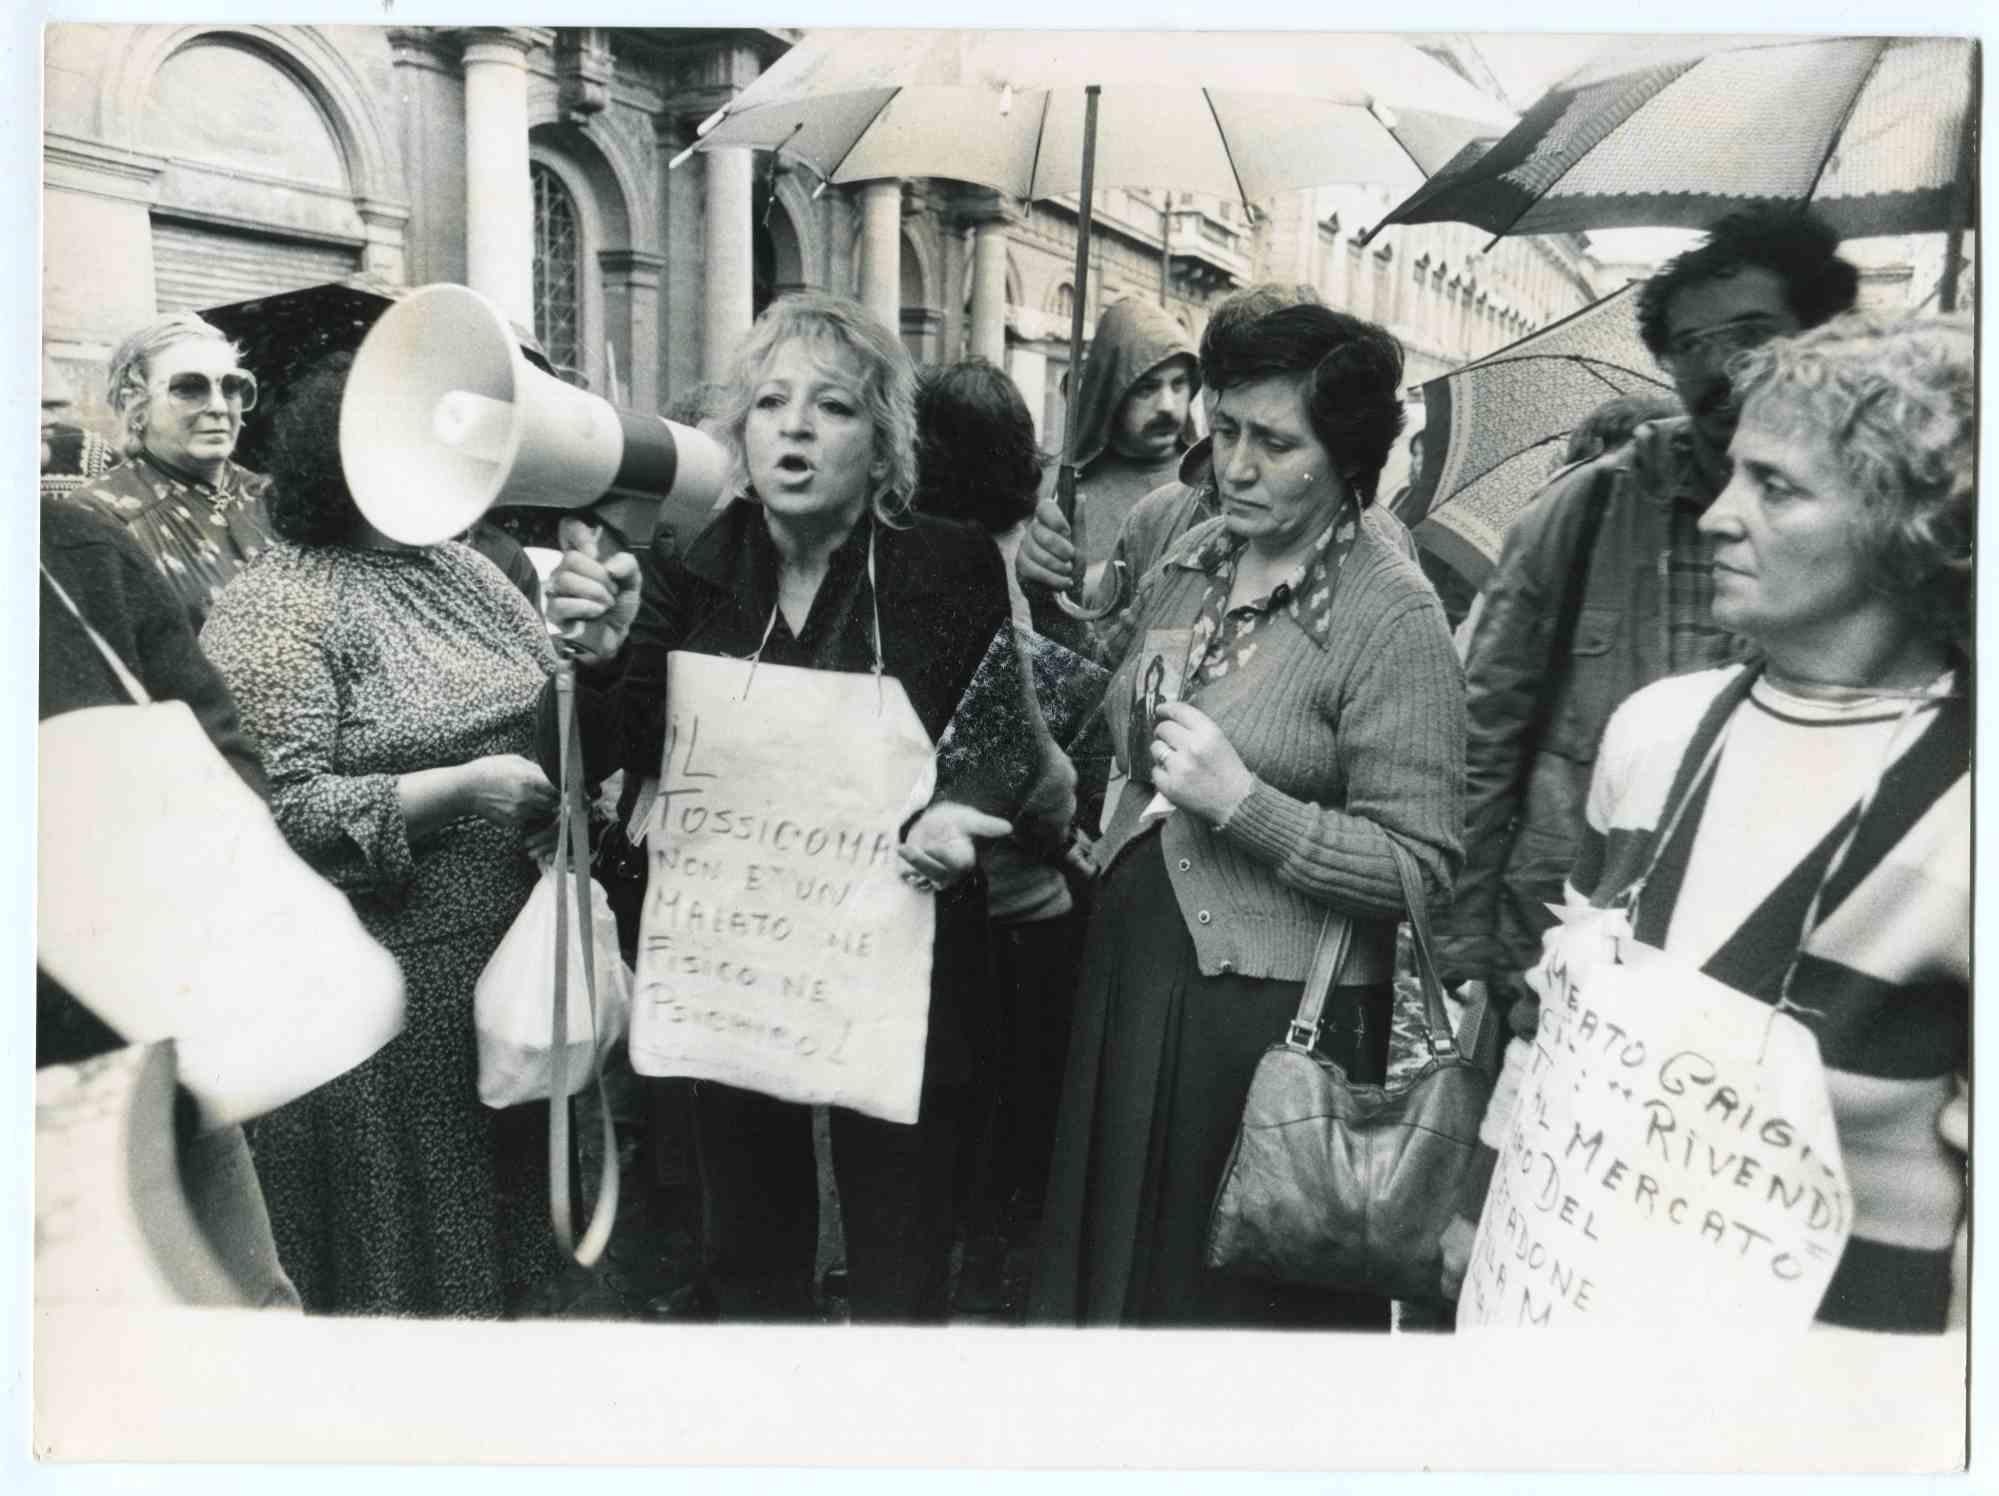 Unknown Black and White Photograph – The Protest - Historische Fotografie über die feministische Bewegung - 1980